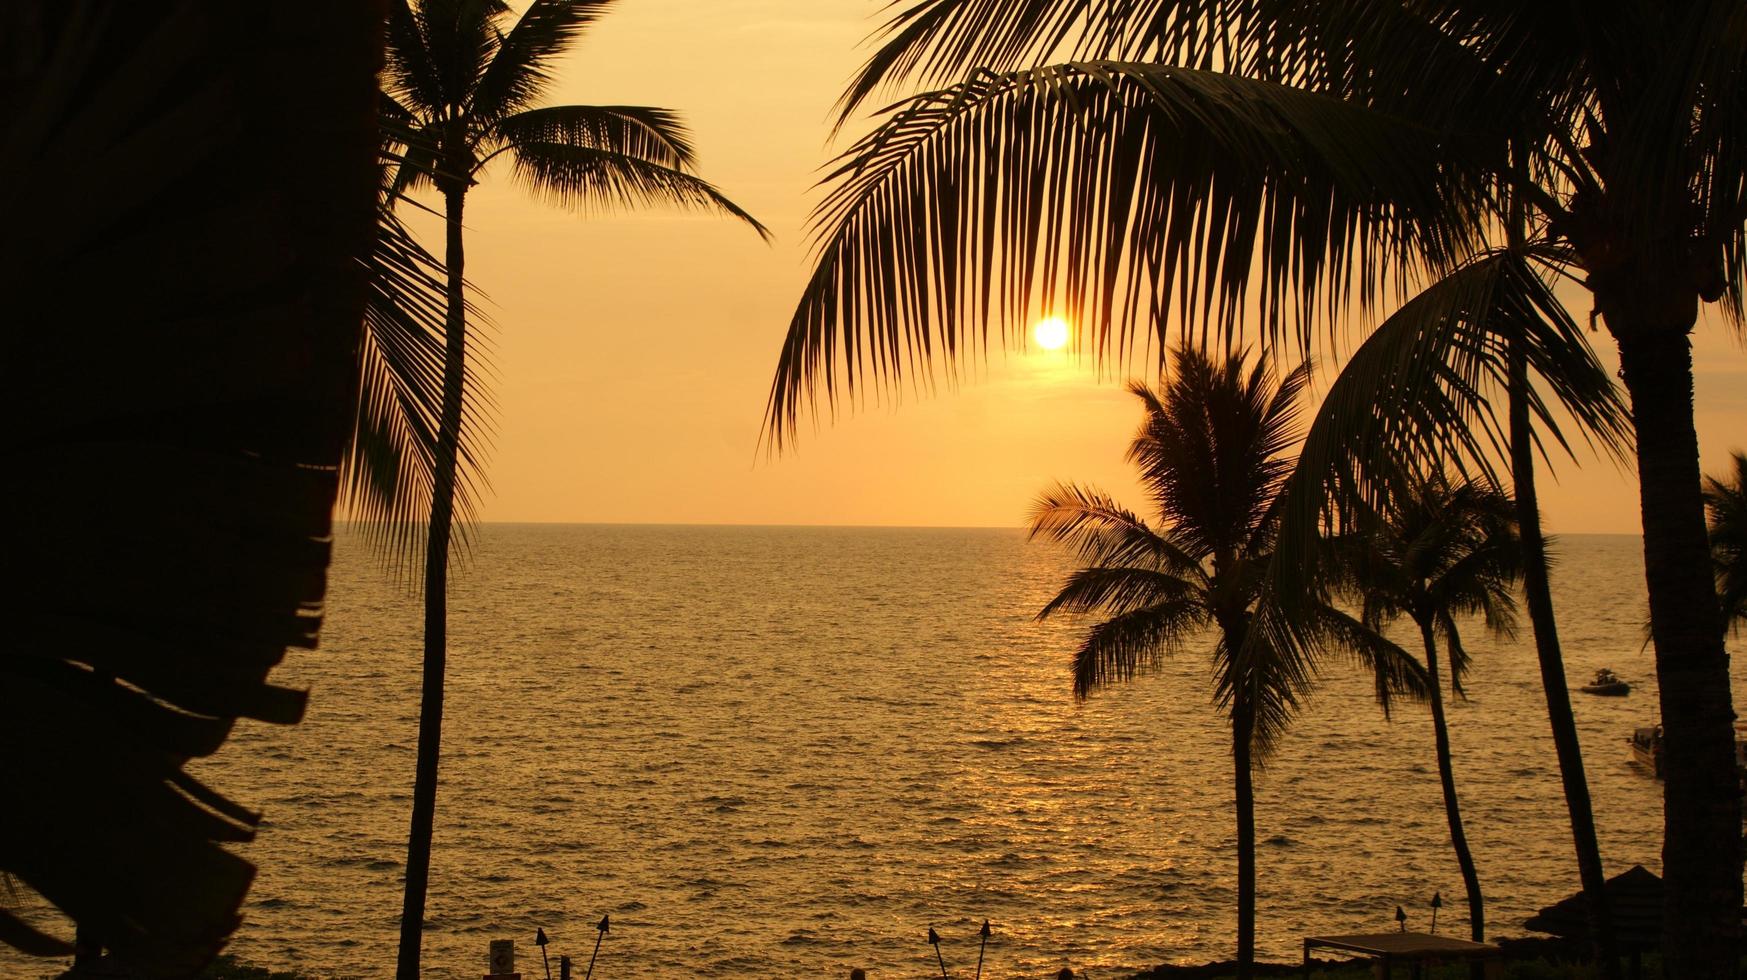 palmboom silhouetten bij zonsondergang foto